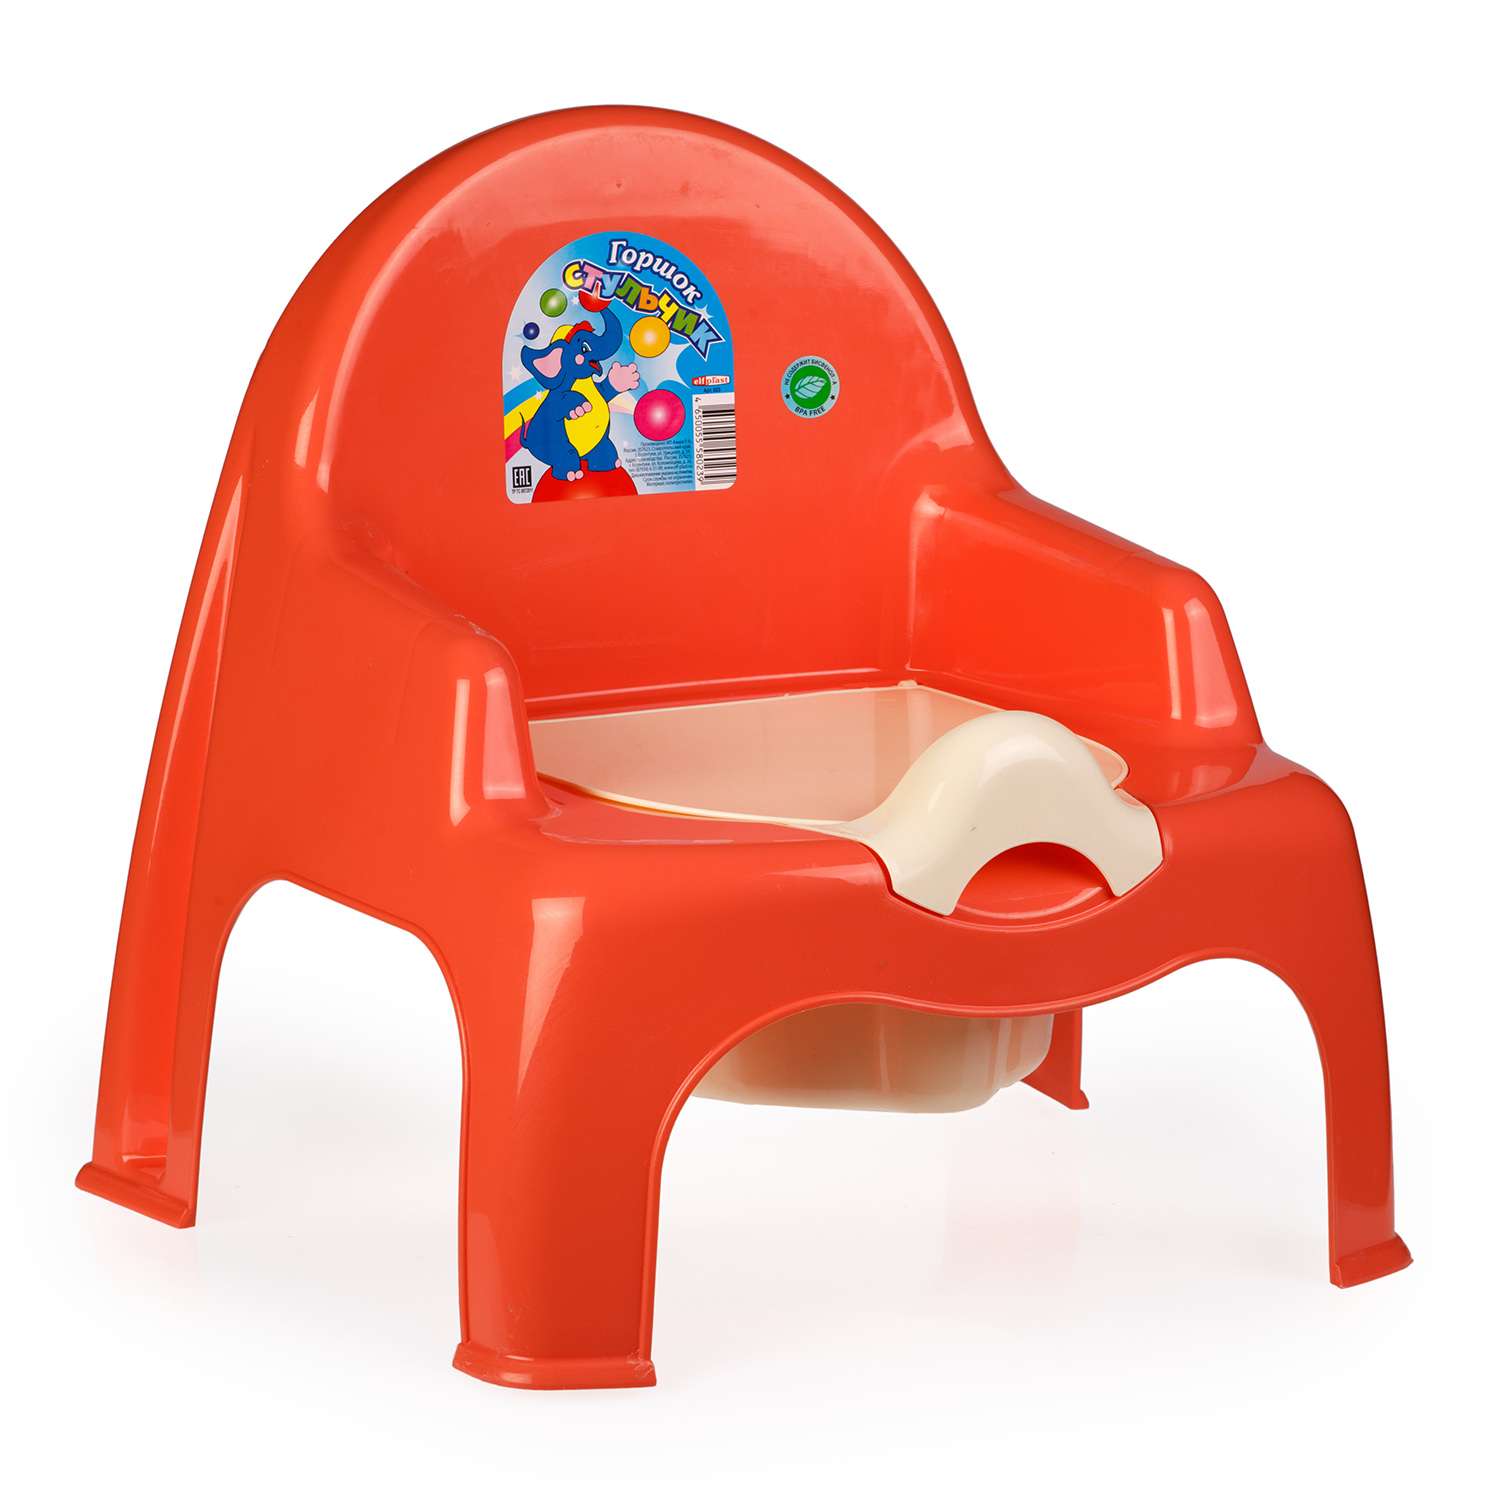 Горшок детский elfplast стульчик детский кораллово-кремовый - фото 1